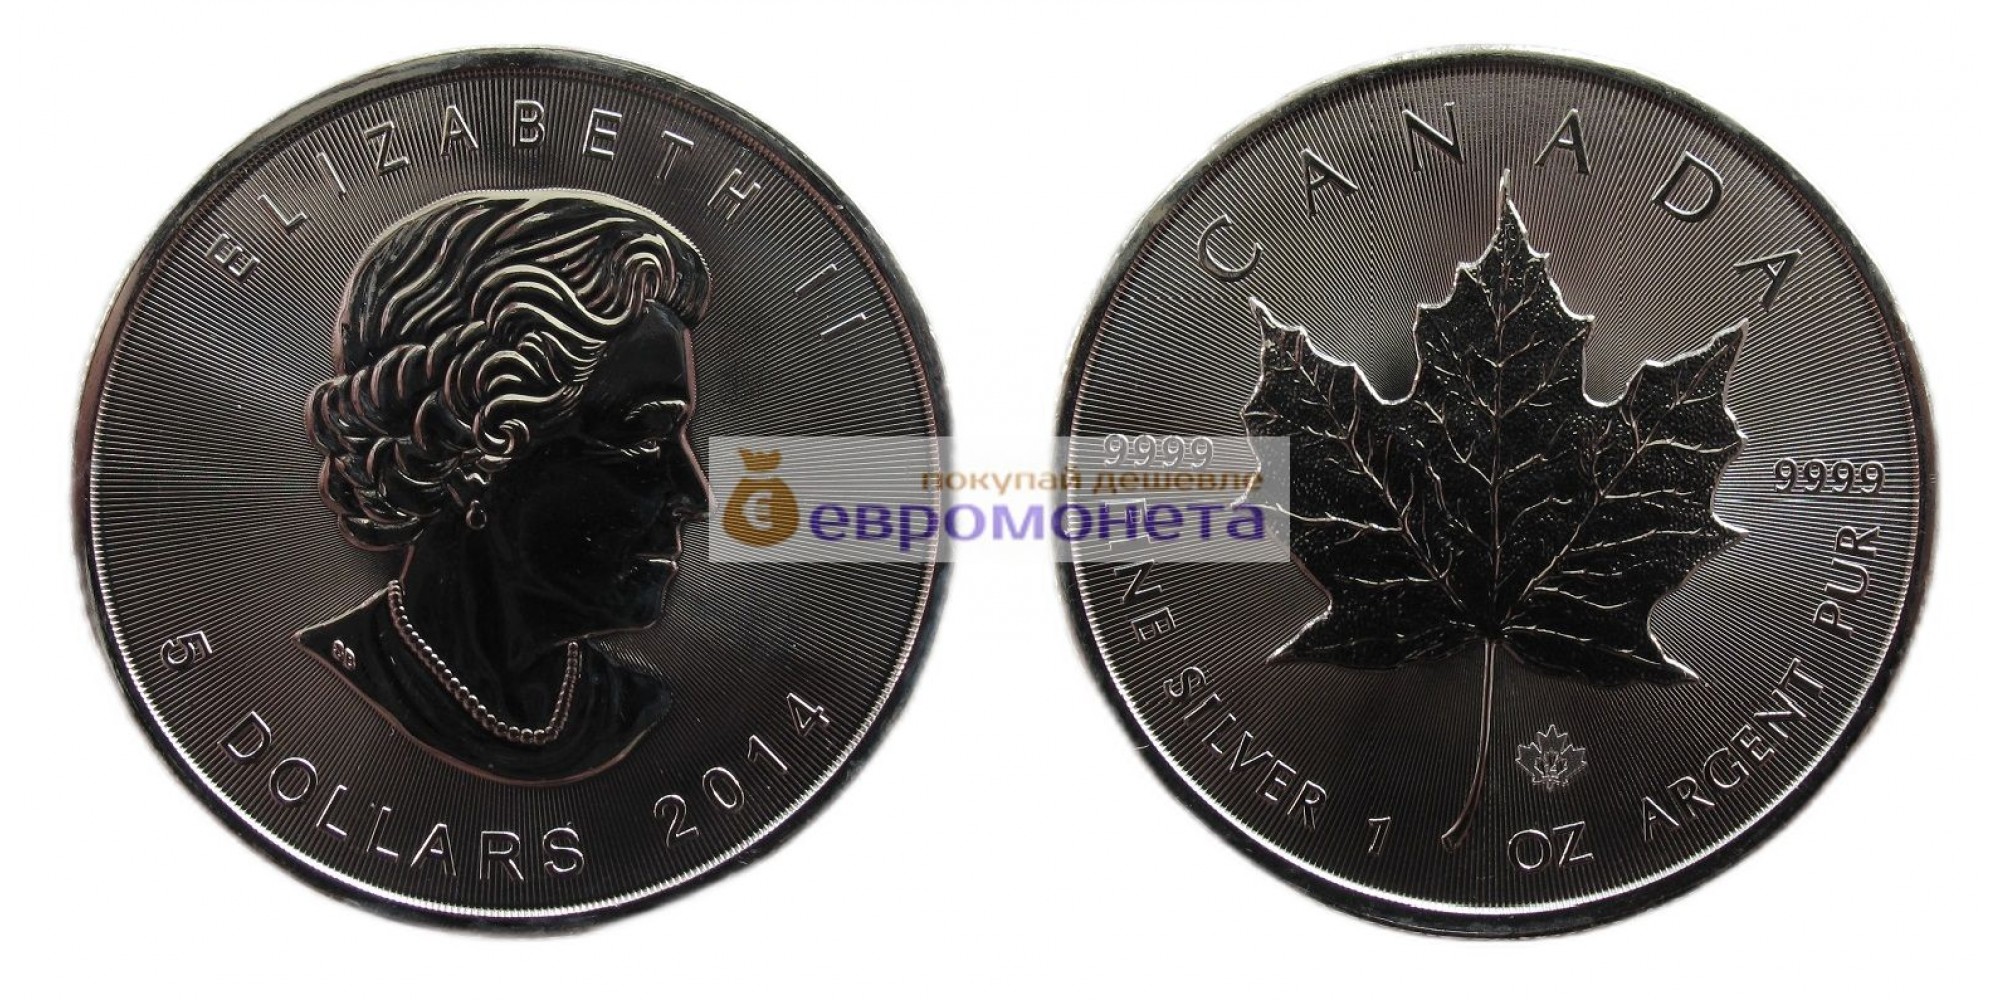 Канада 5 долларов 2014 год Кленовый лист (маленький лист под большим). Серебро унция 999 пробы